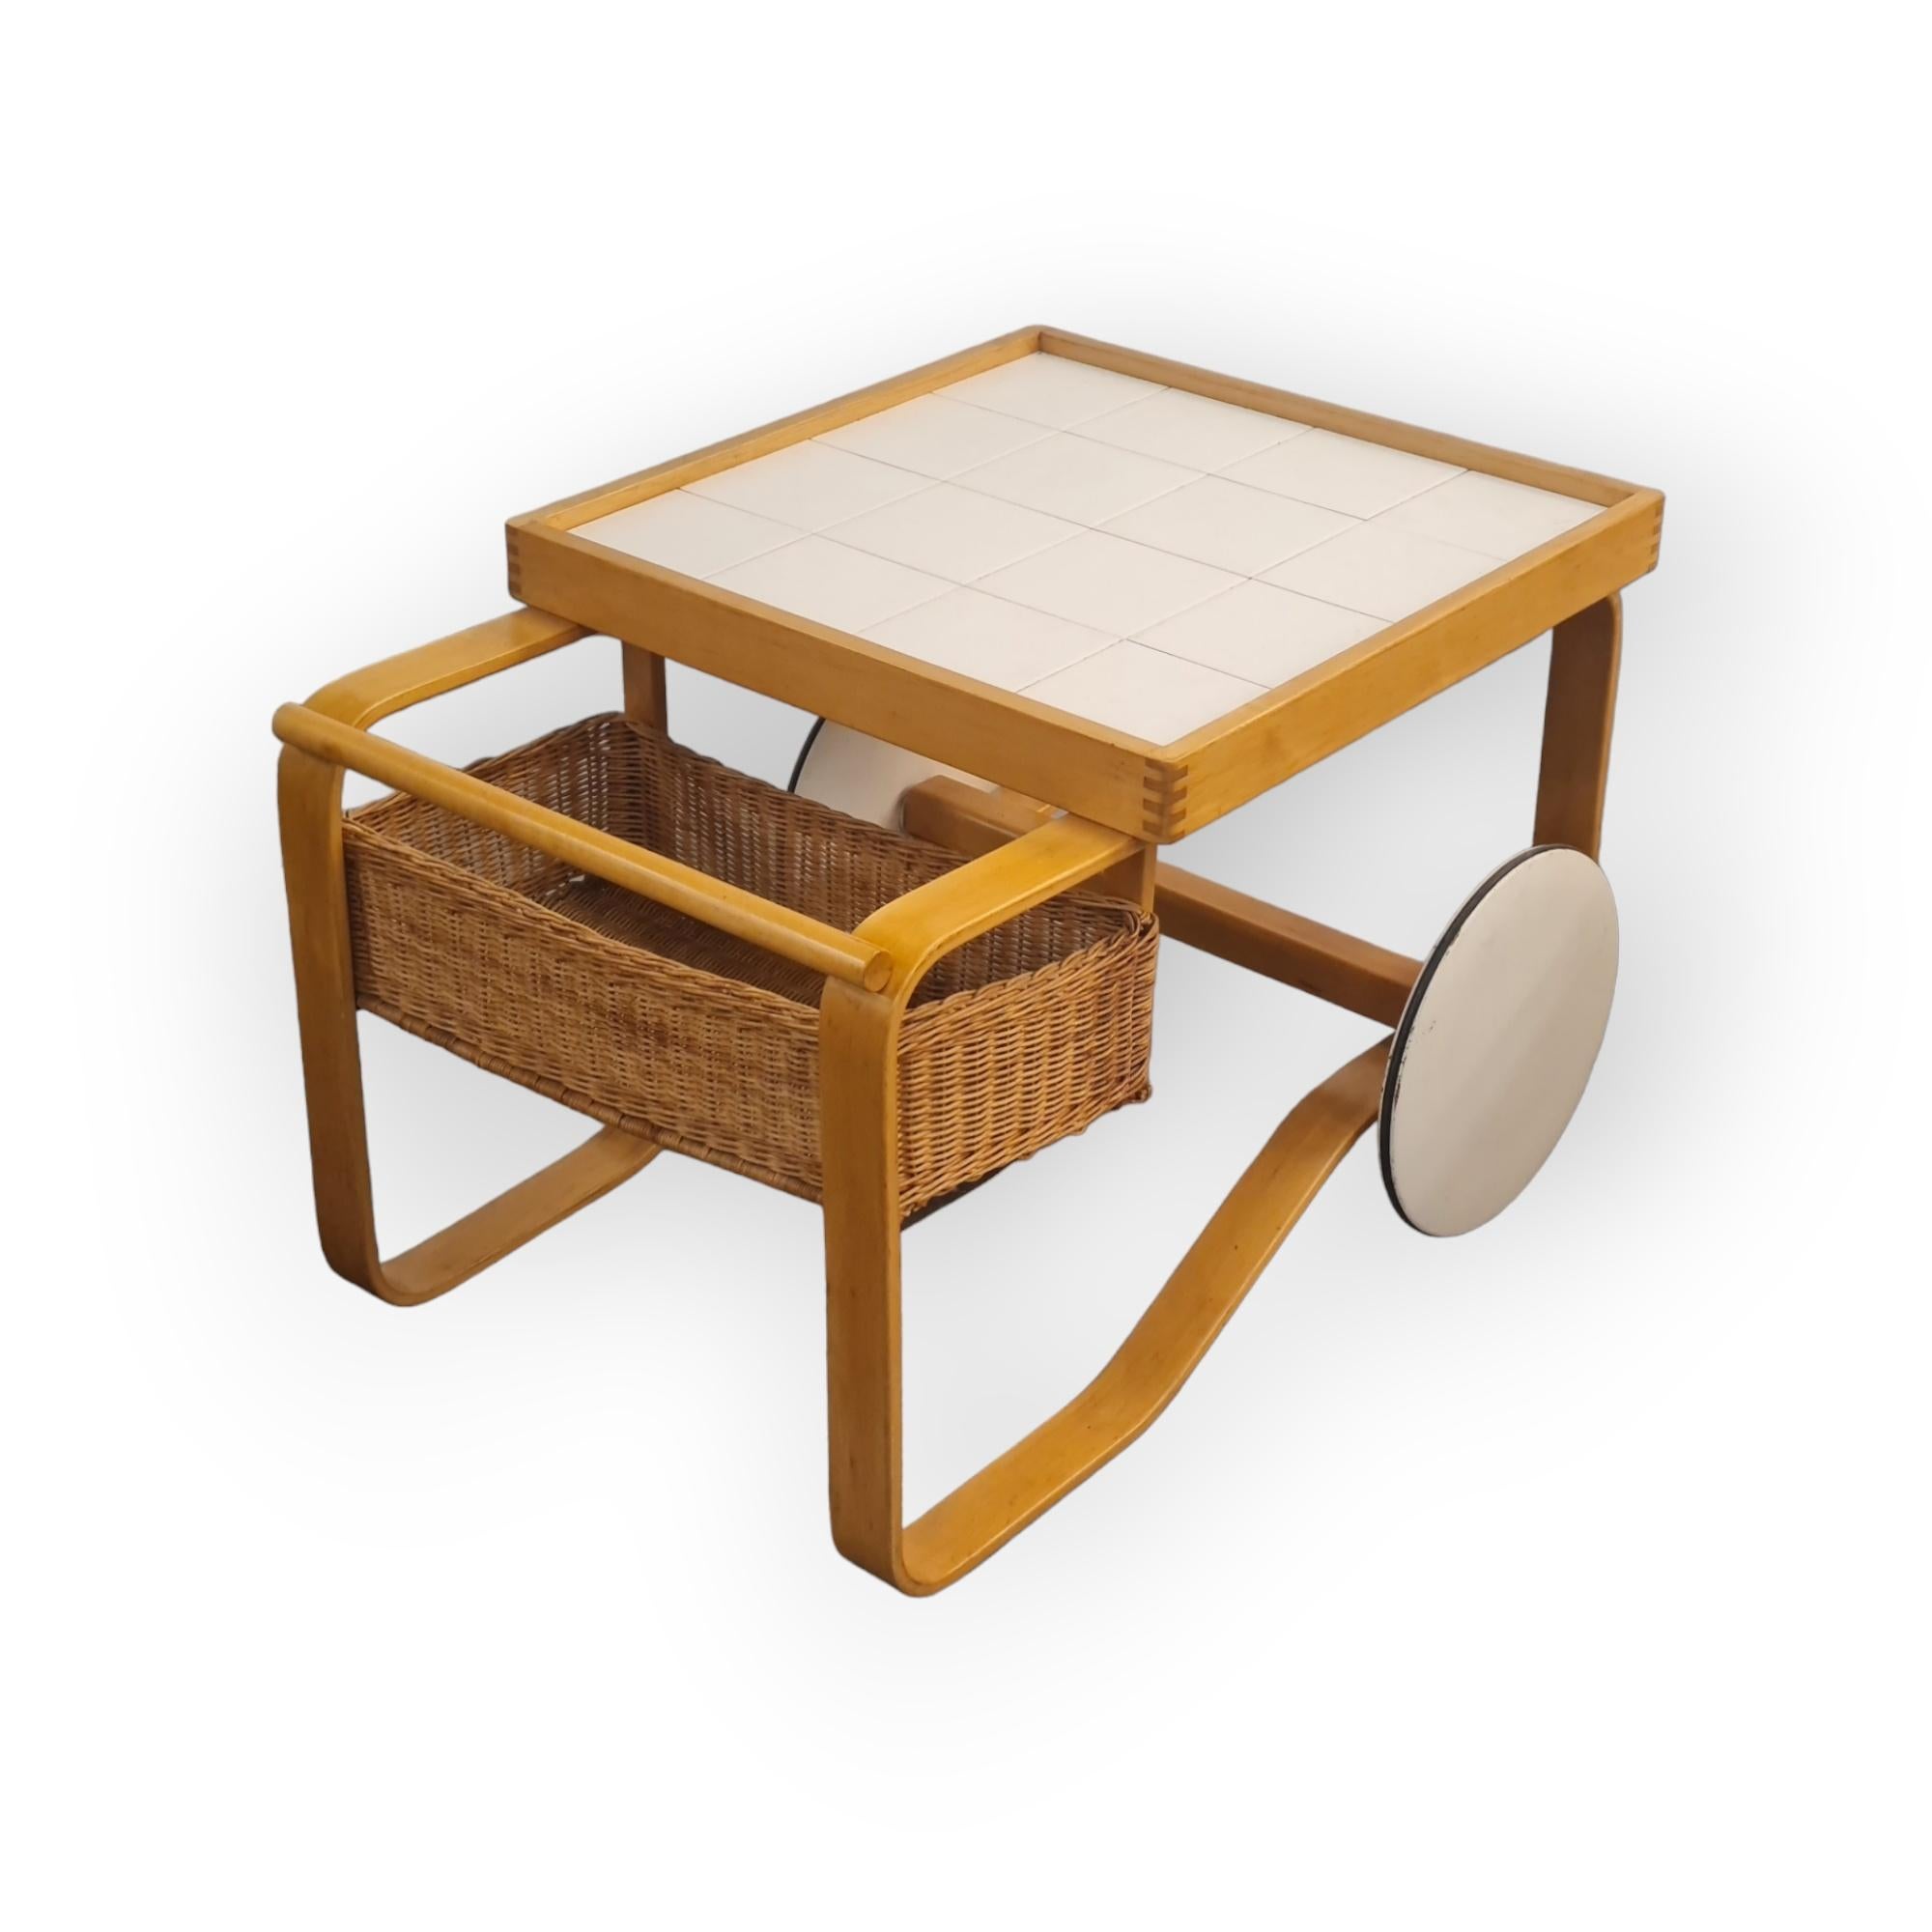 Eines der kultigsten und begehrtesten Stücke von Alvar Aalto. Dieser traditionelle, elegante und pragmatische Teewagen ist im Stil des modernen skandinavischen Designs gehalten. Der Wagen ist mit Keramikfliesen und einem Rattankorb ausgestattet und